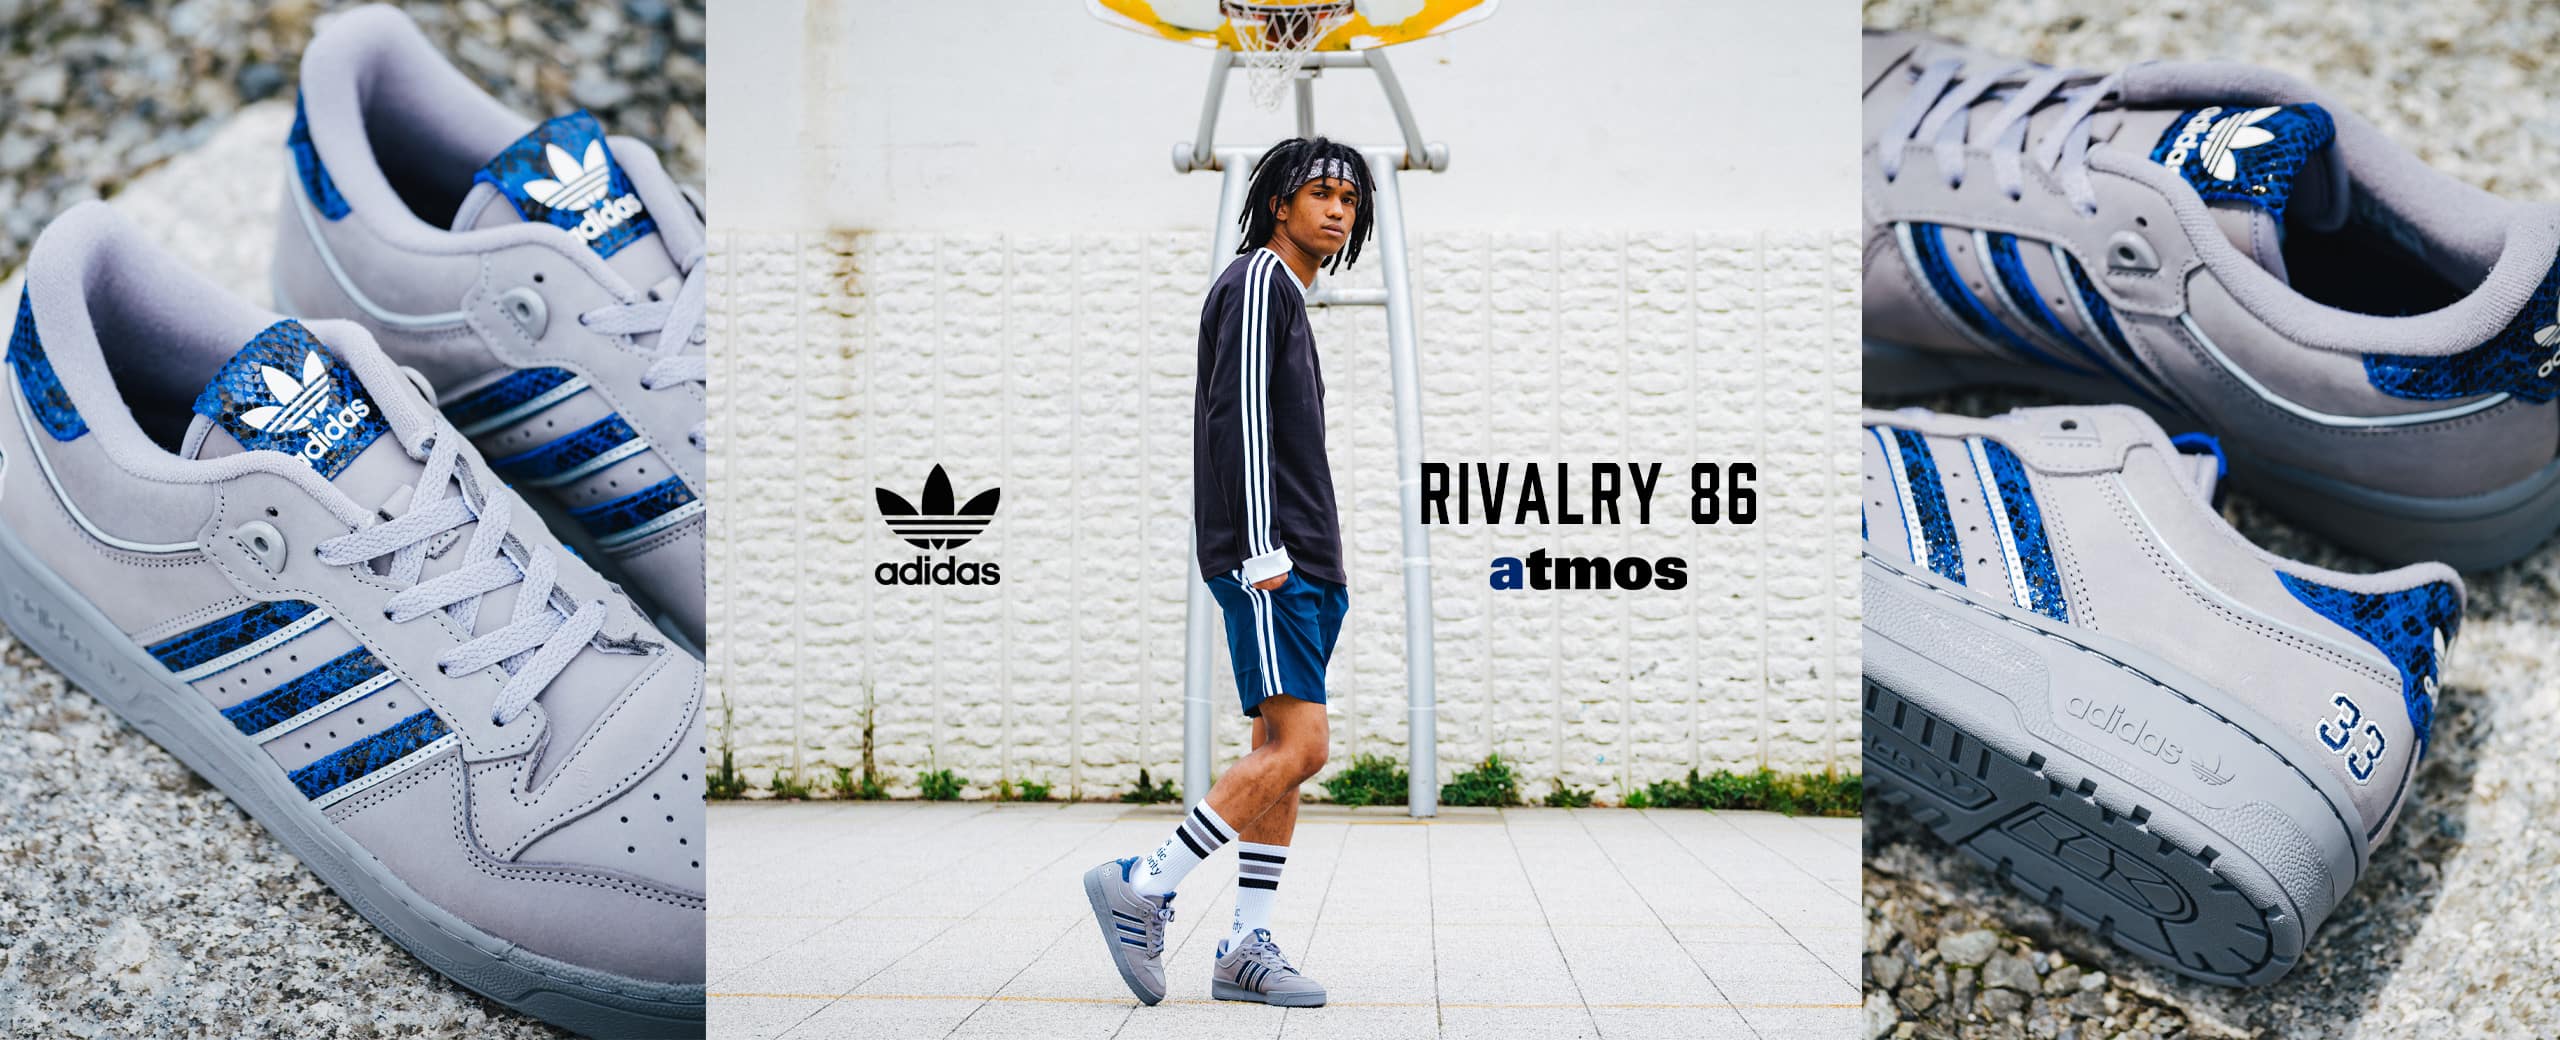 "adidas Originals RIVALRY86 | atmos"